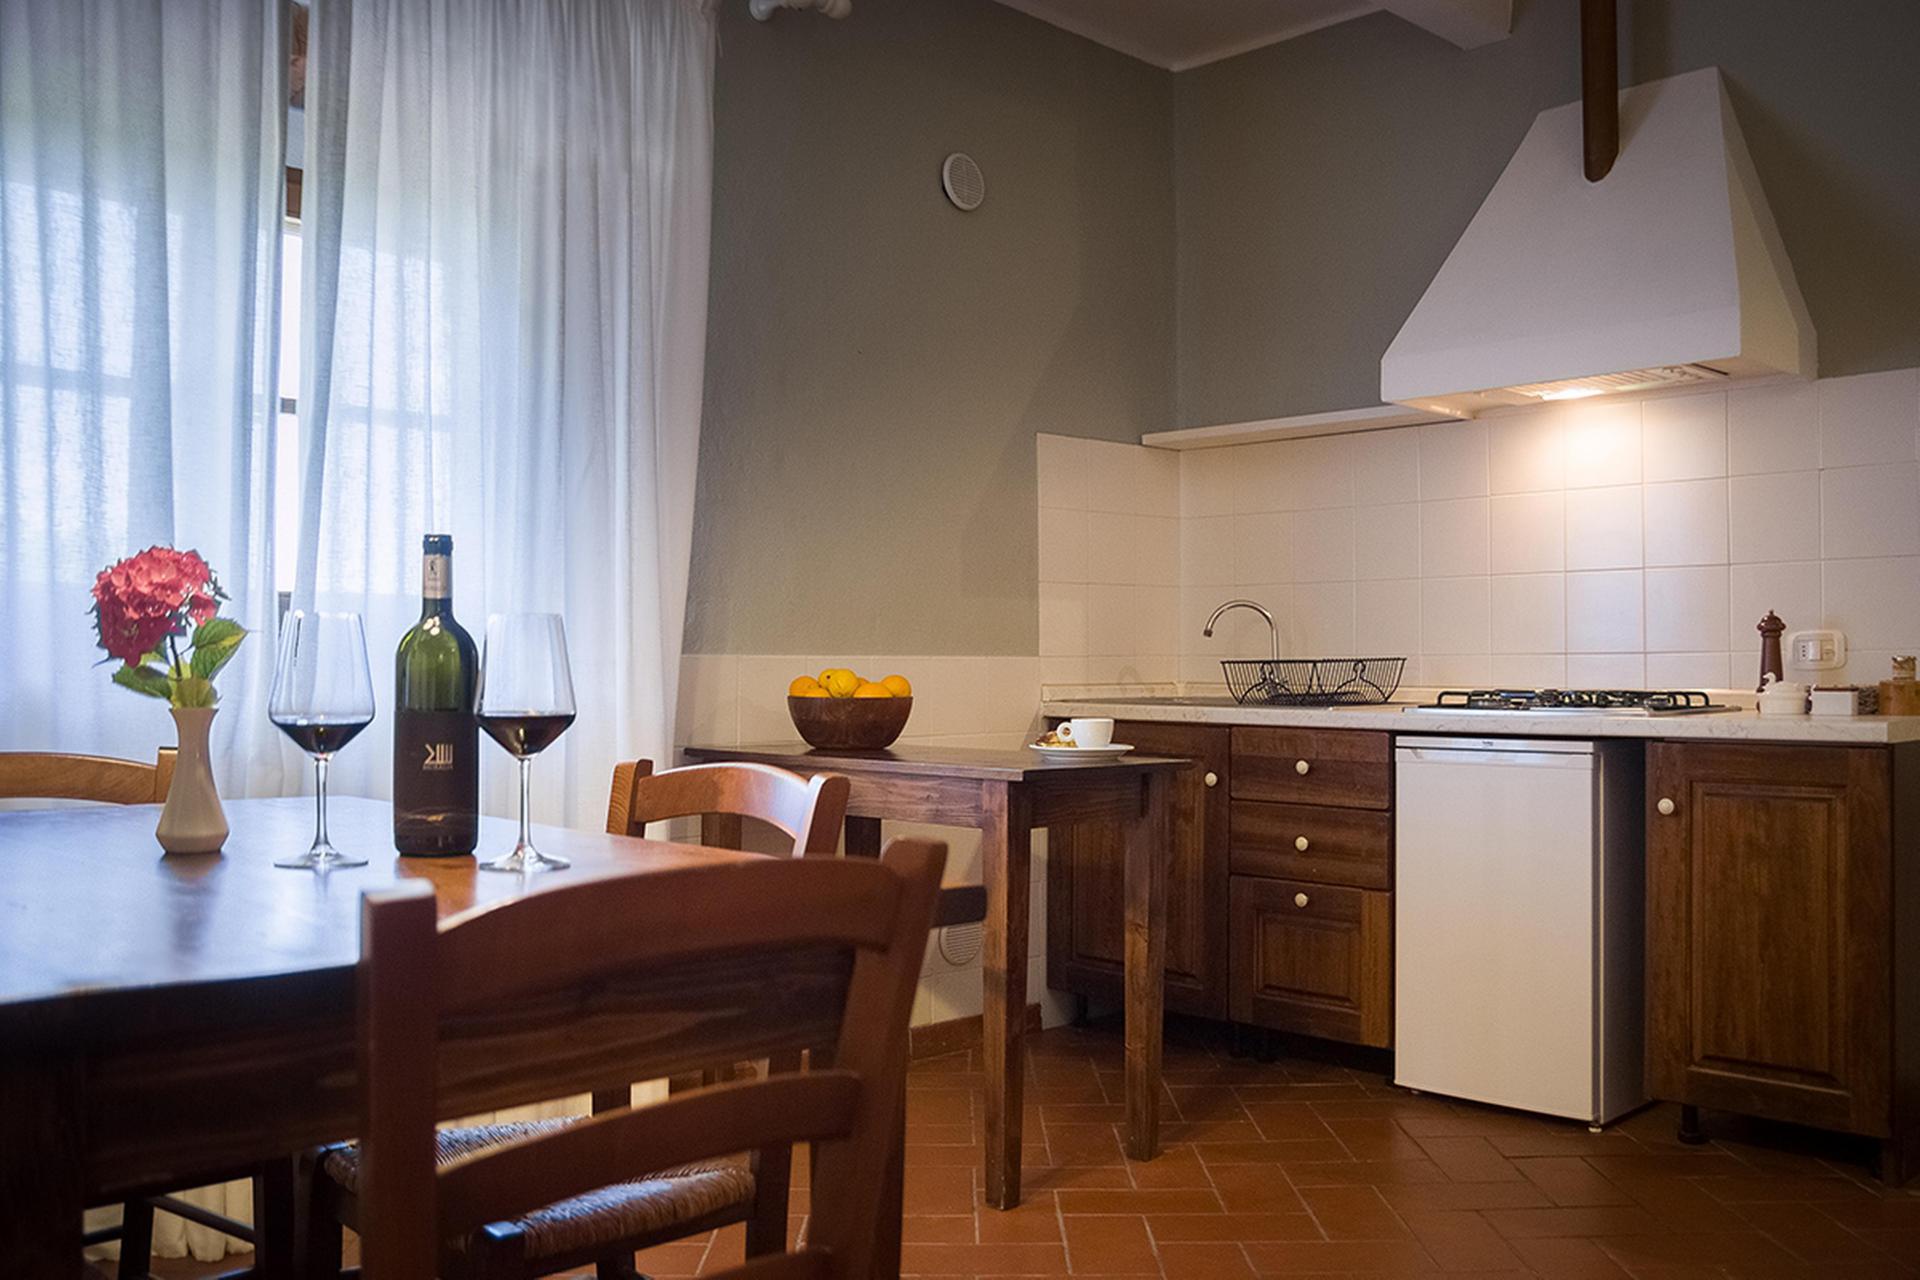 Agriturismo Toscane 10 gezellige appartementen in Maremma-streek Toscane | myitaly.nl